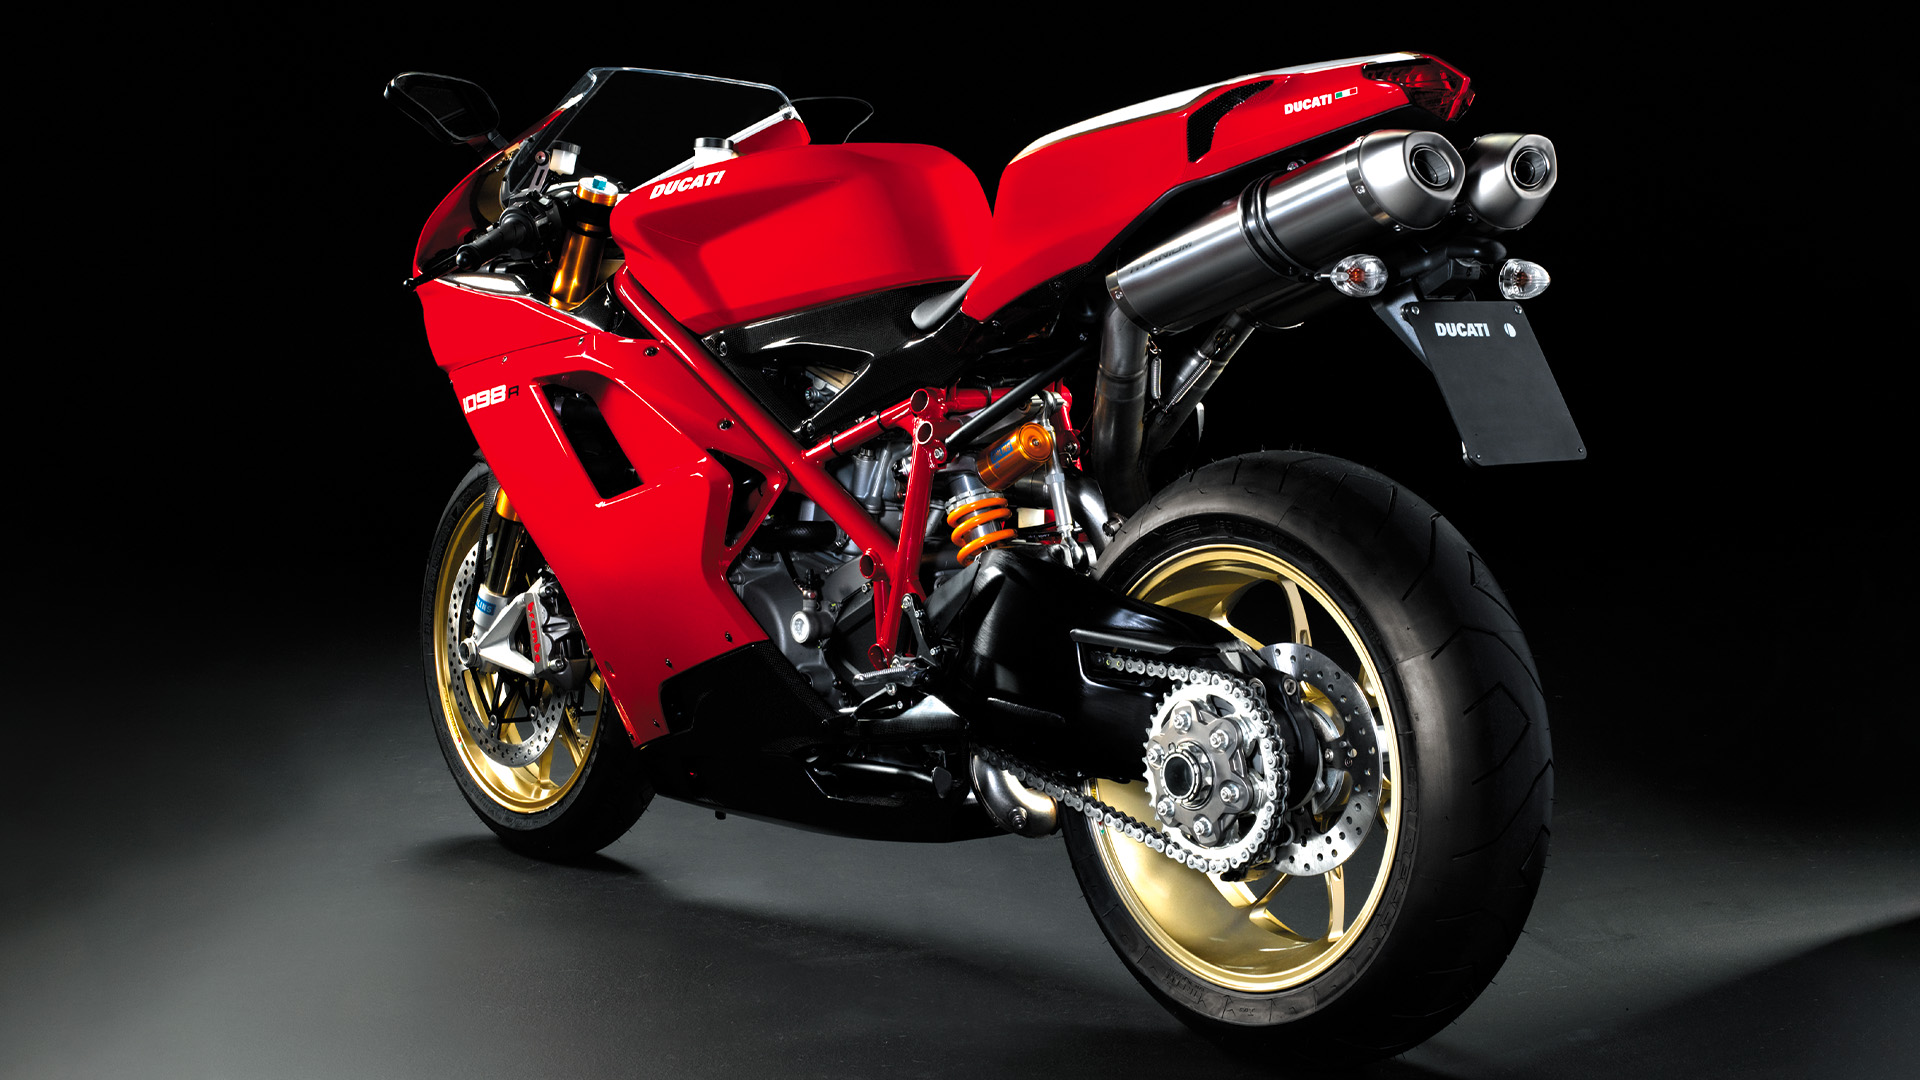 La Ducati 1098 R, certamente la più potente e aggressiva tra le versioni da strada della serie